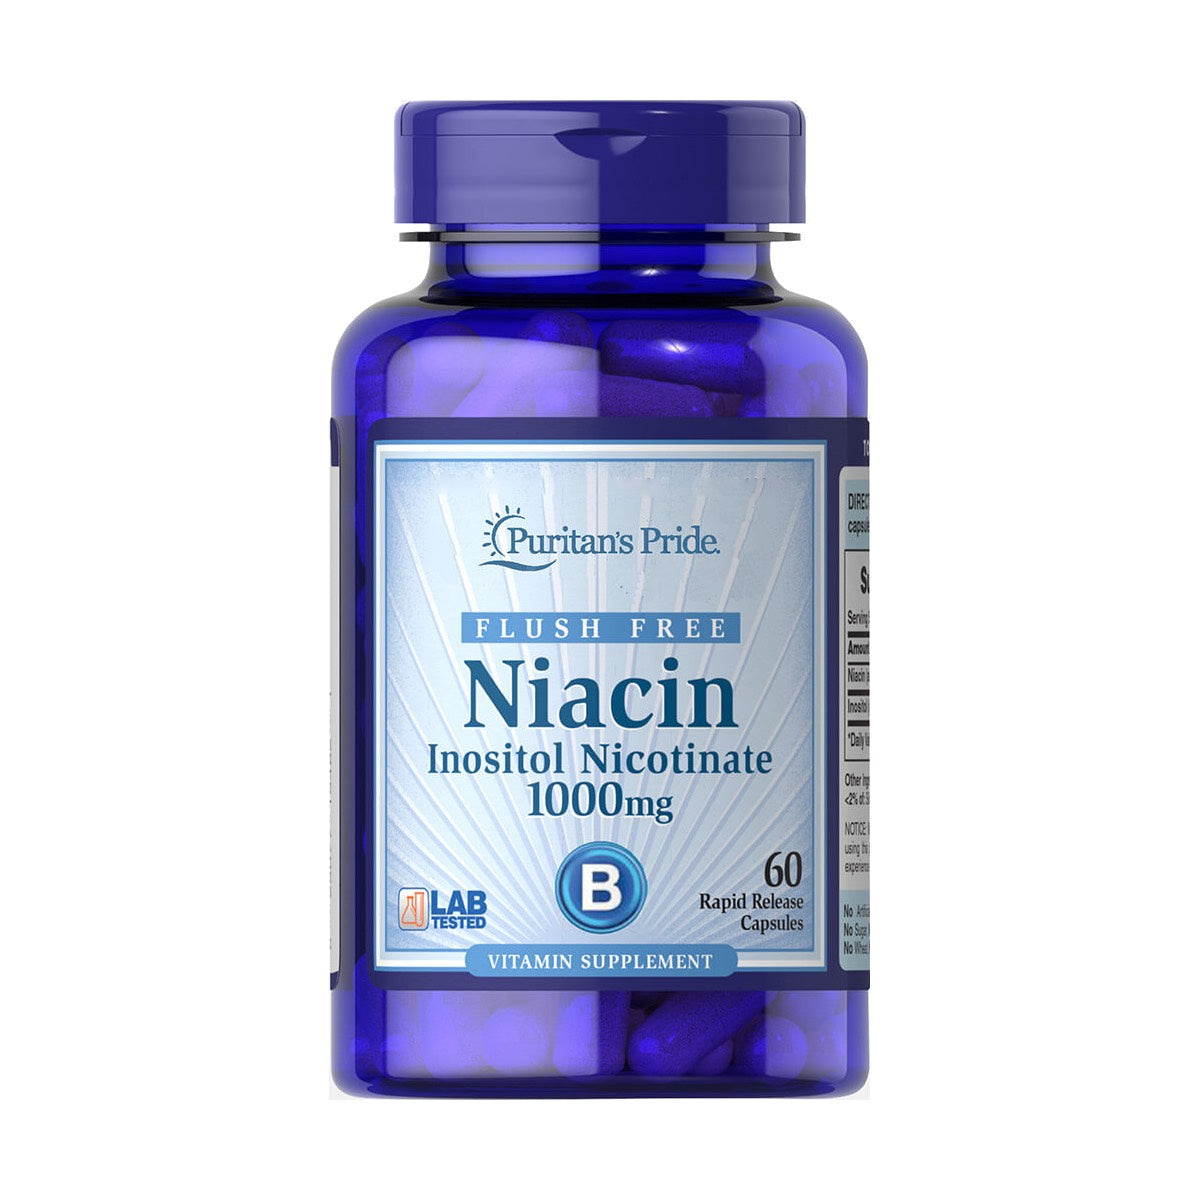 Puritan's Pride, Flush Free Niacin Inositol Nicotinate 1000 mg